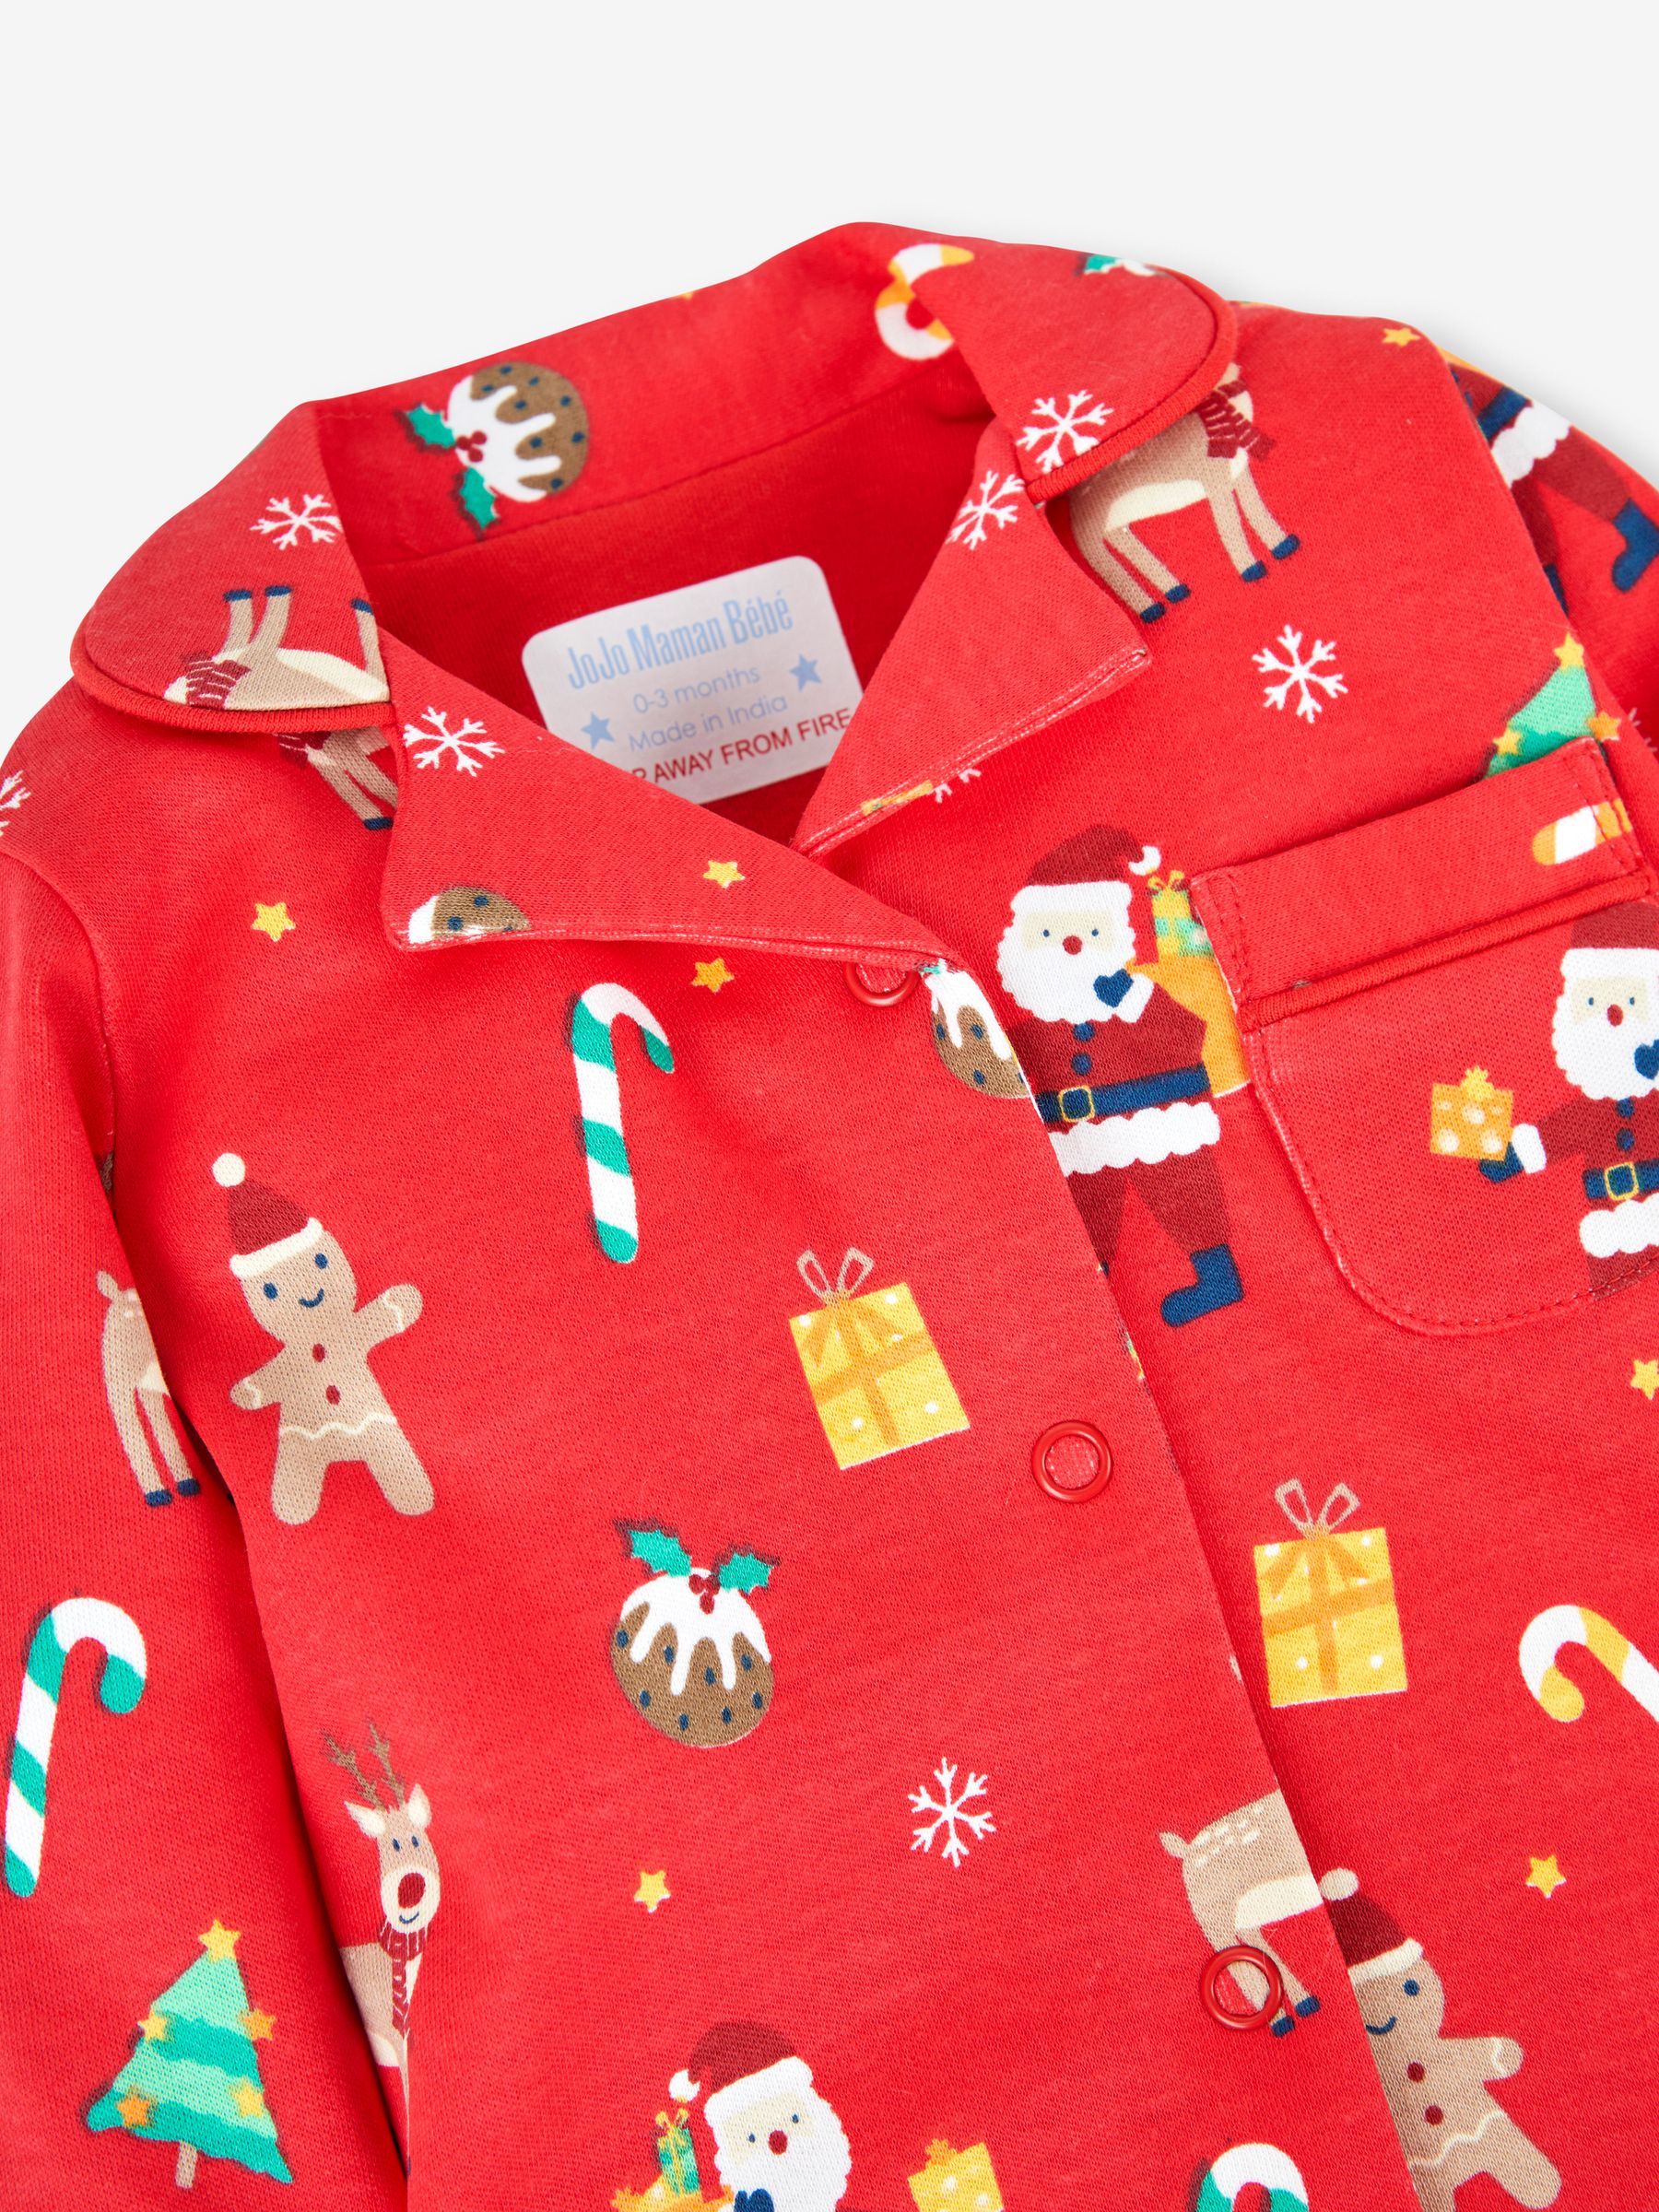 Buy Red Kids' Christmas All-In-One Pyjamas from the JoJo Maman Bébé UK ...